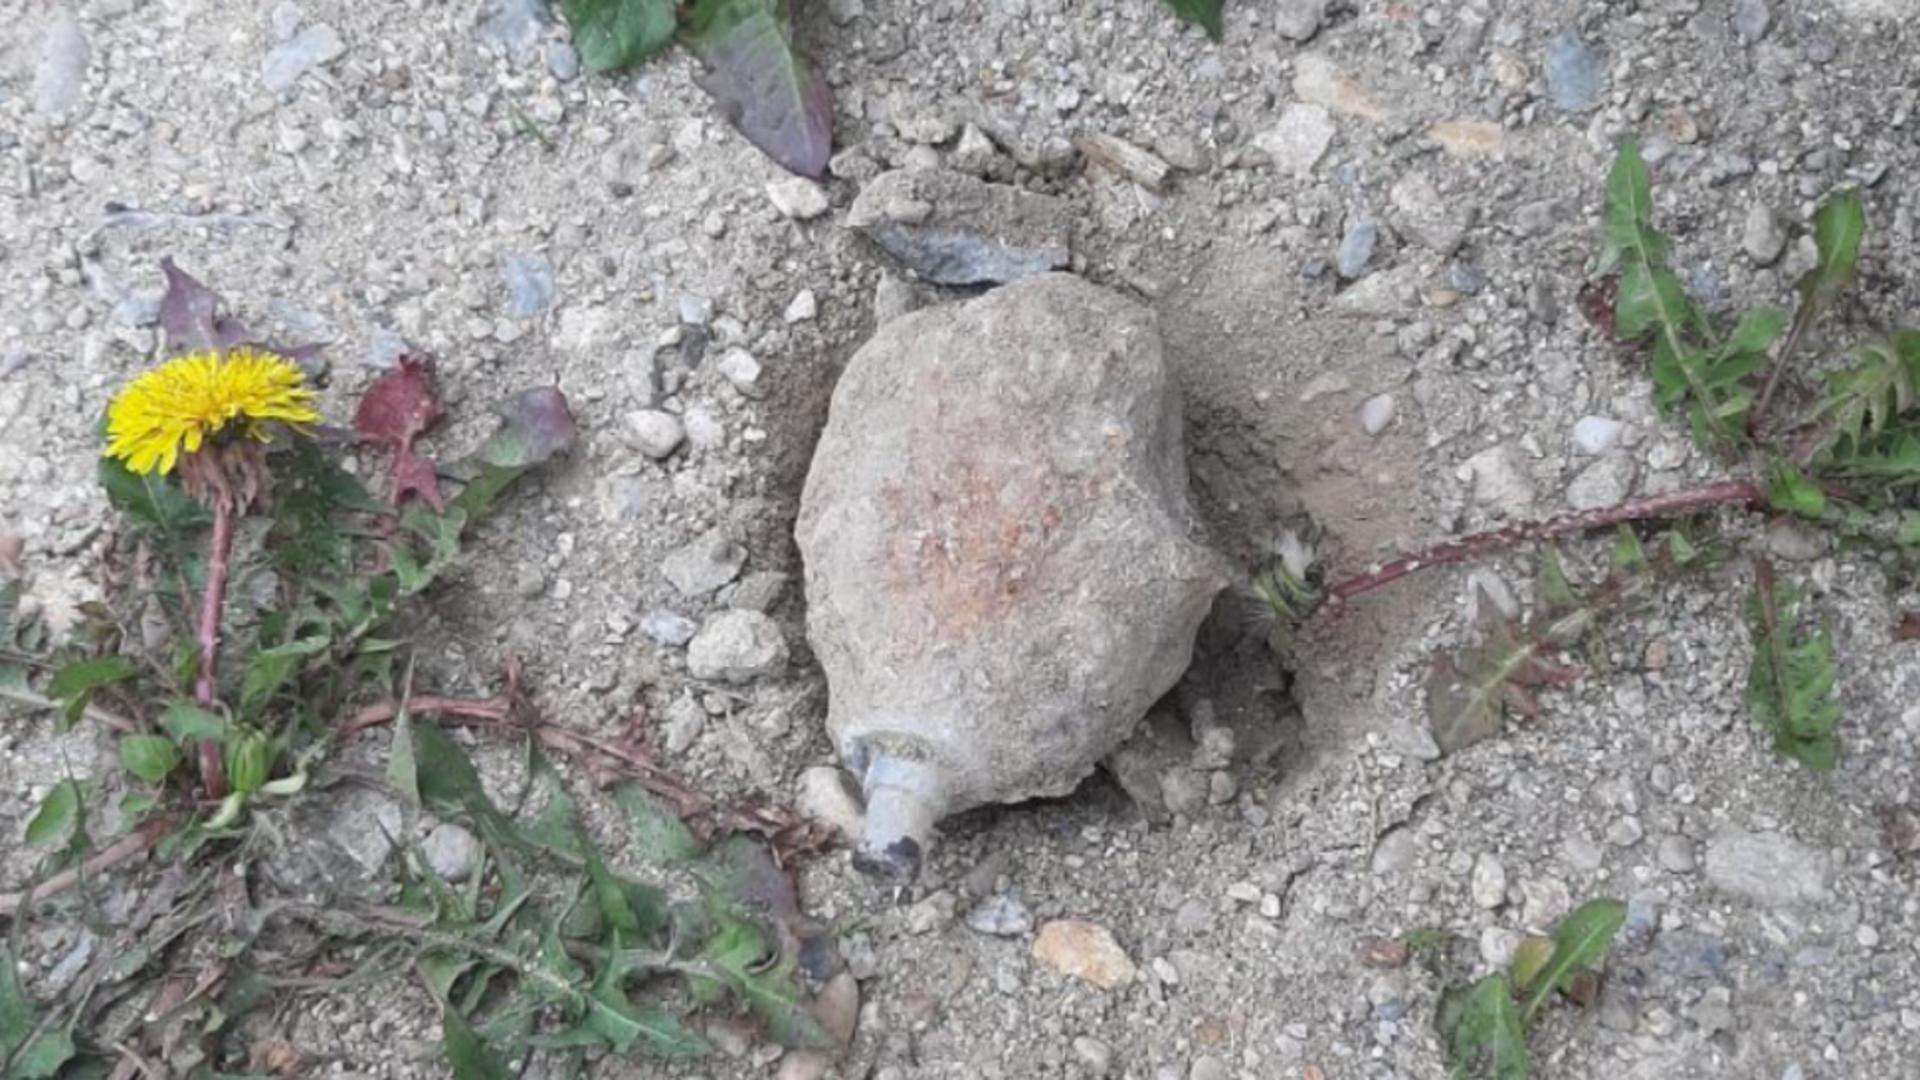 Grenadă neexplodată, găsită în curtea unui localnic din judeţul Vâlcea. Anunțul ISU/ Foto: ISU Vâlcea